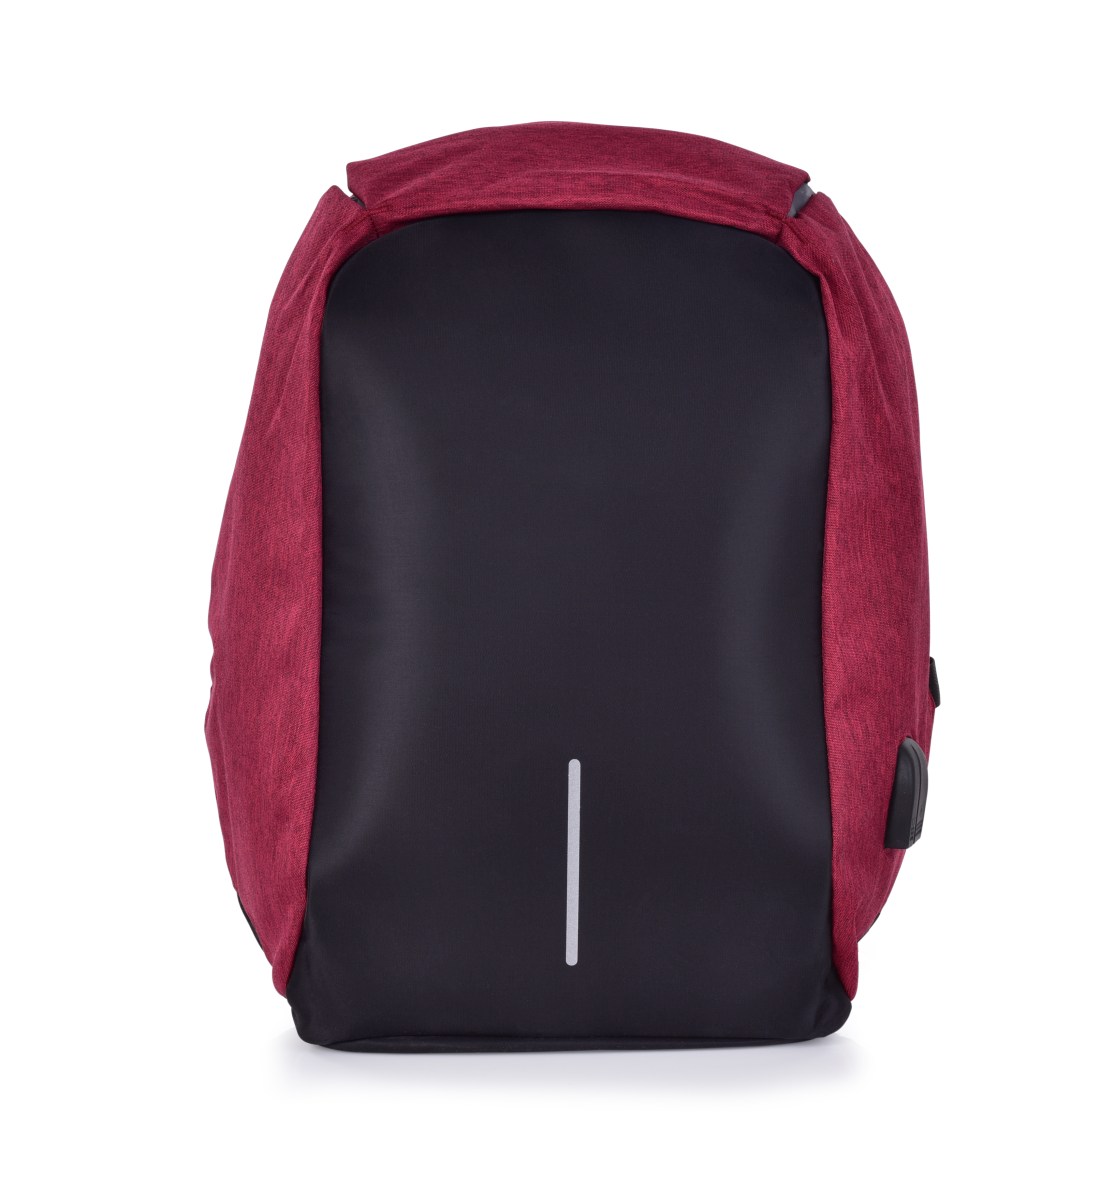 Bezpečný batoh TRAVEL&STUDENT s USB připojením a výstupem na sluchátka